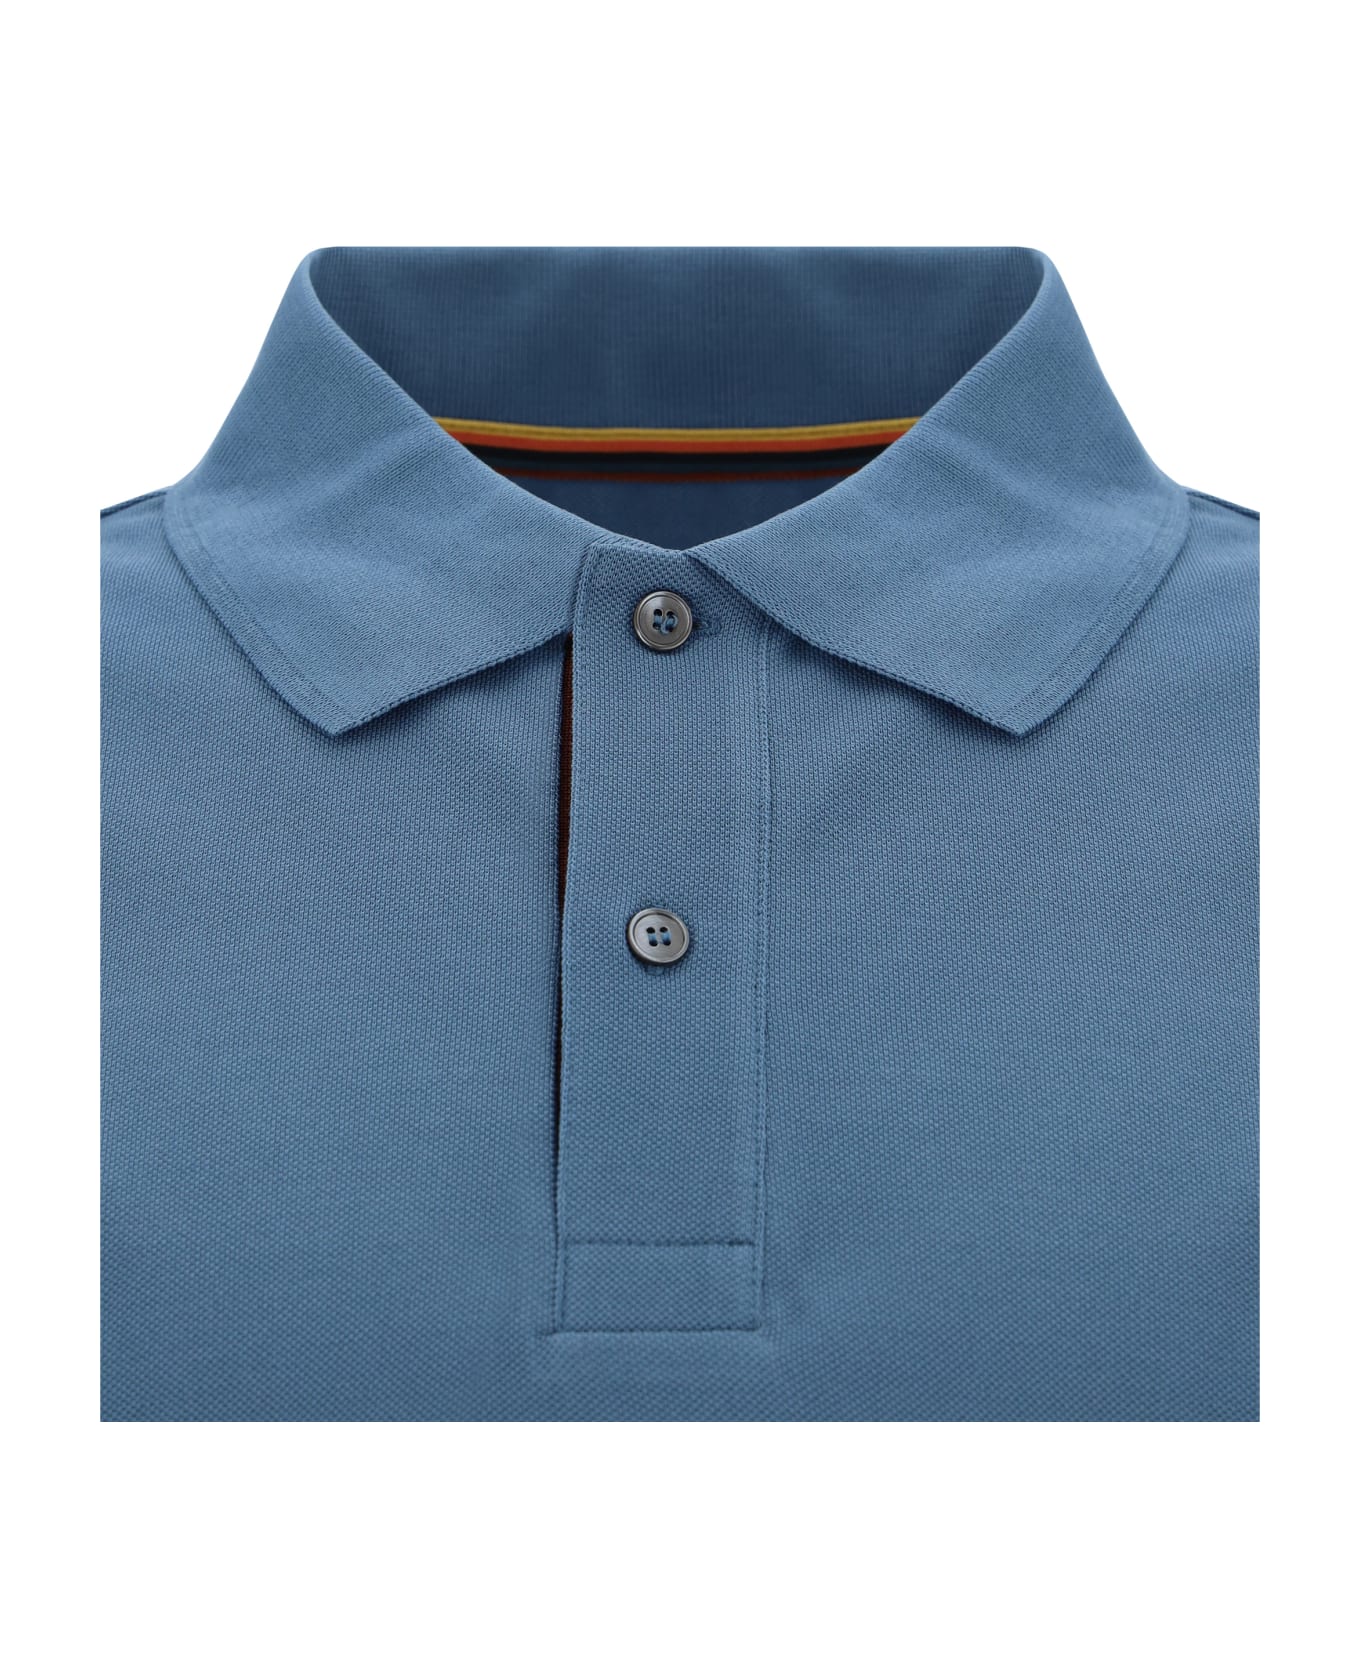 Paul Smith Polo Shirt - 44b